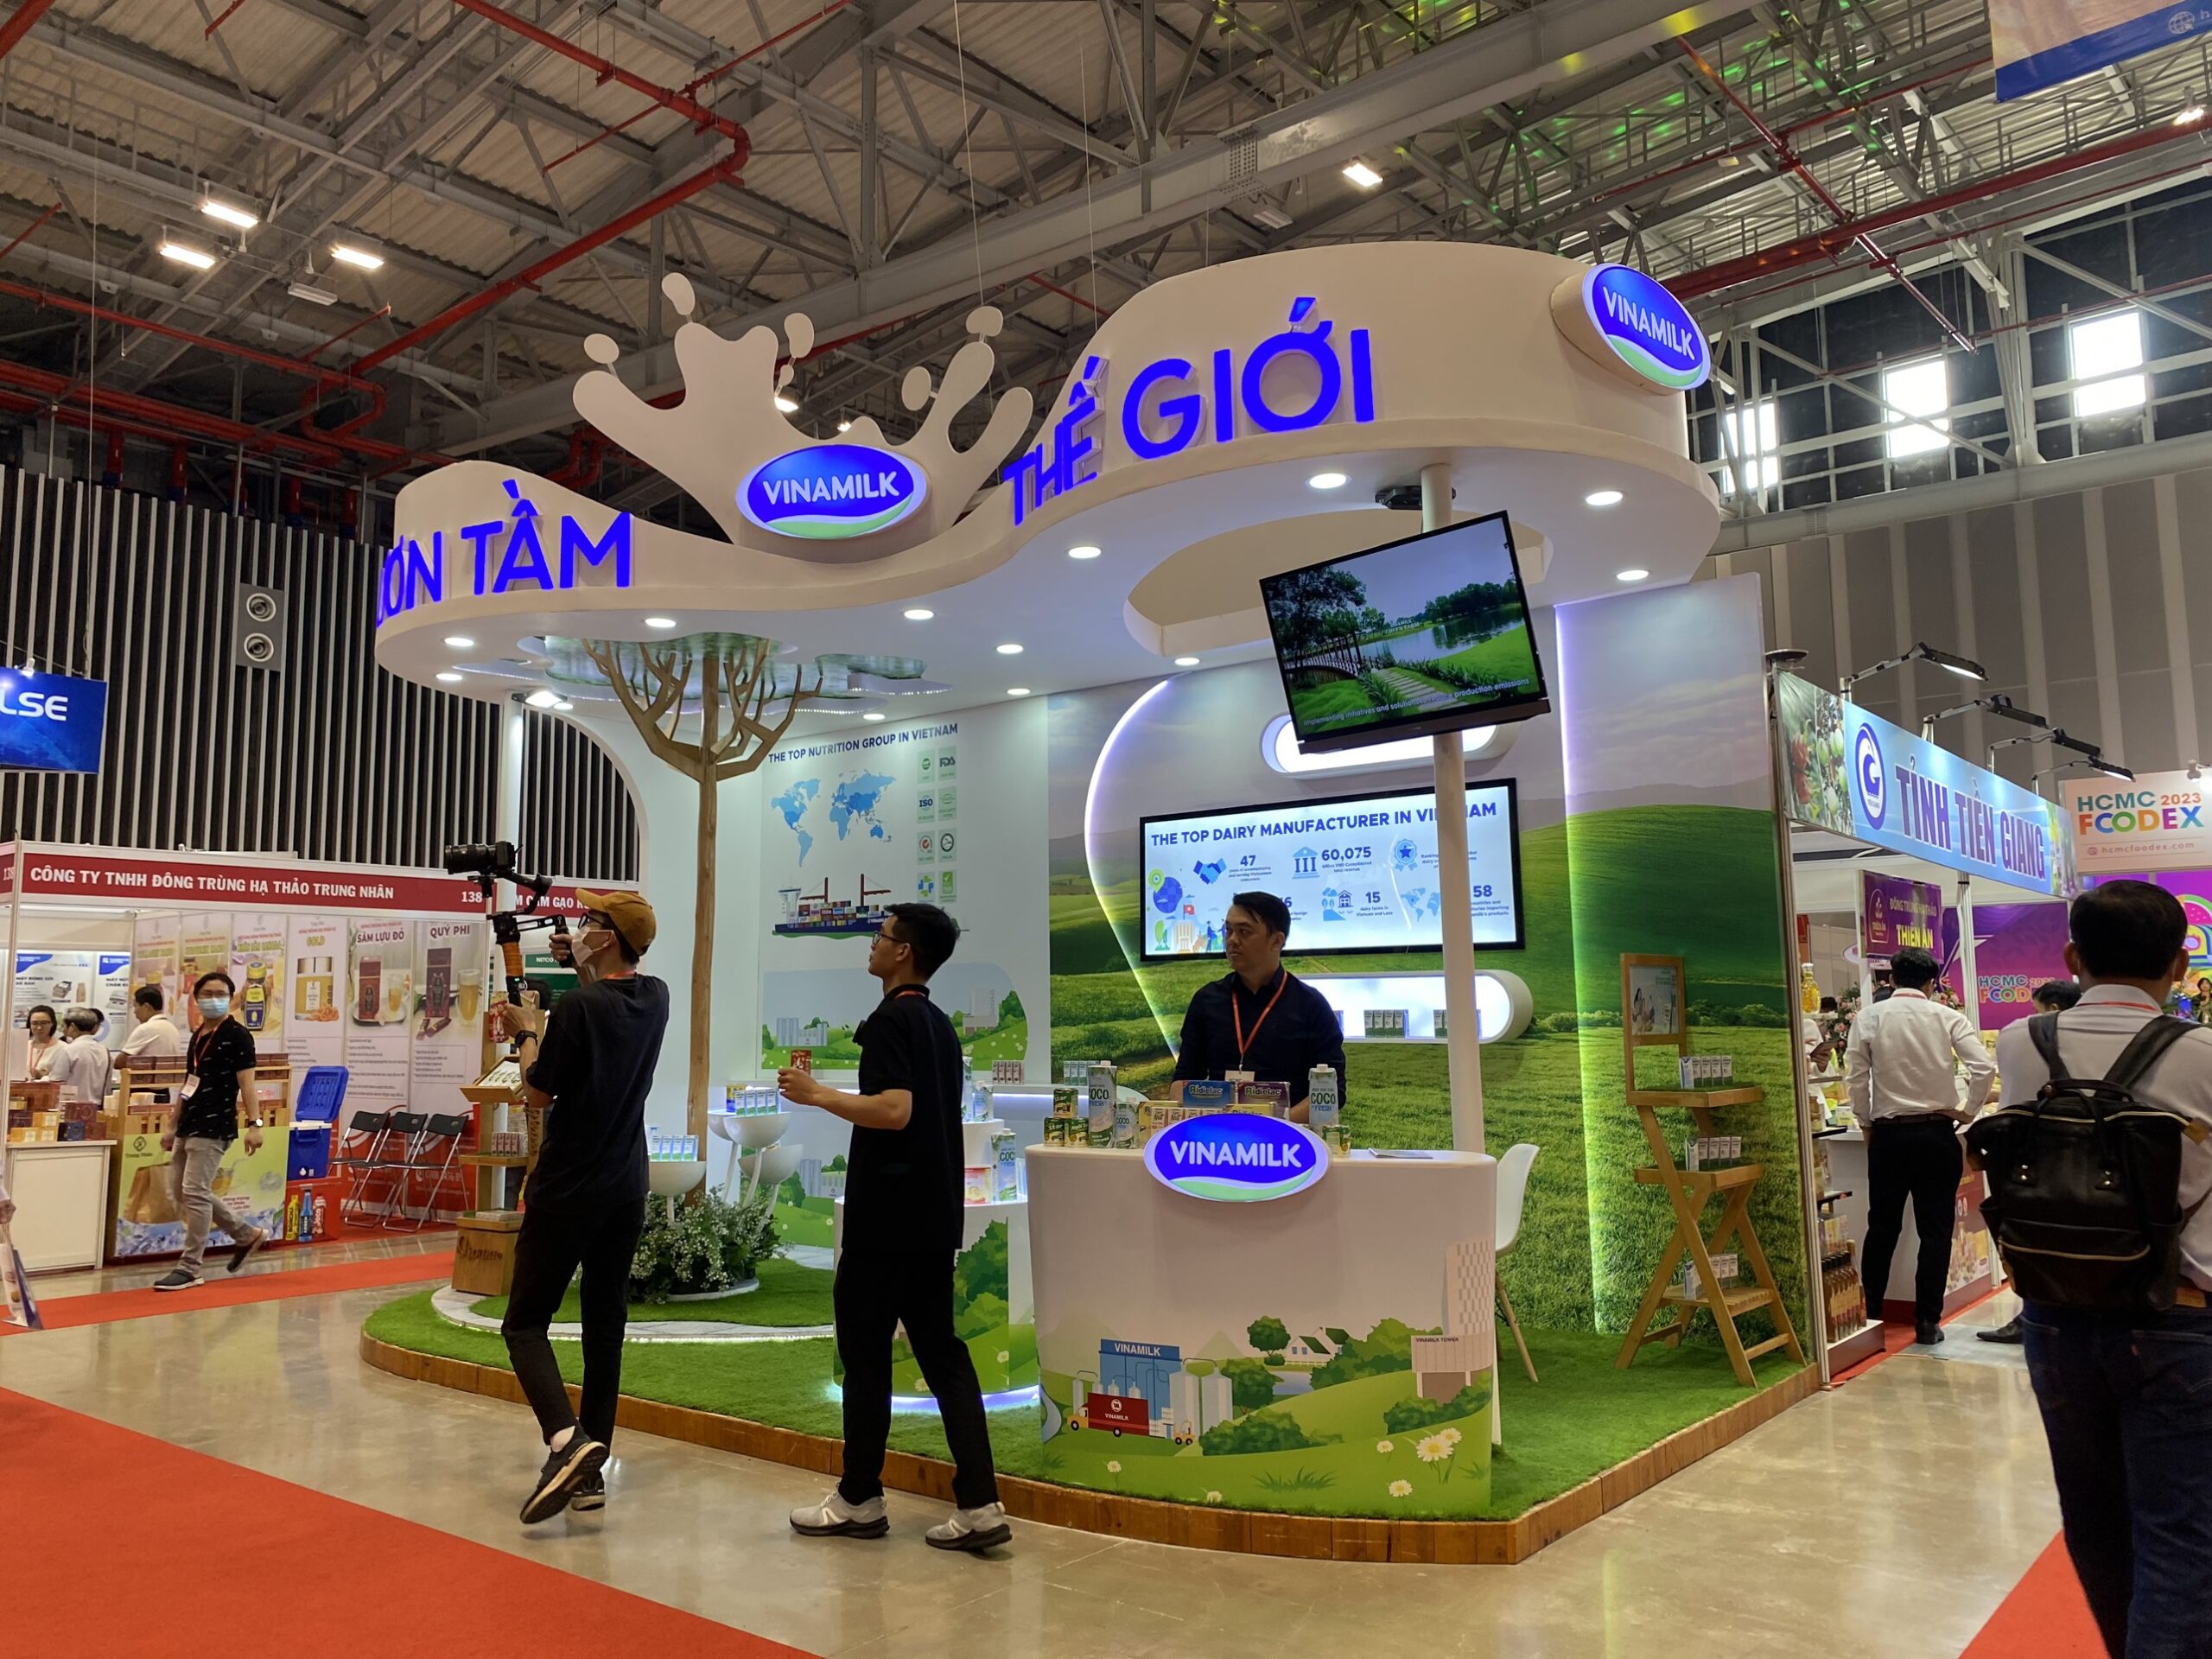 Vietnam Expo HCM 2023 - Thi công gian hàng triển lãm Vietnam Expo HCM